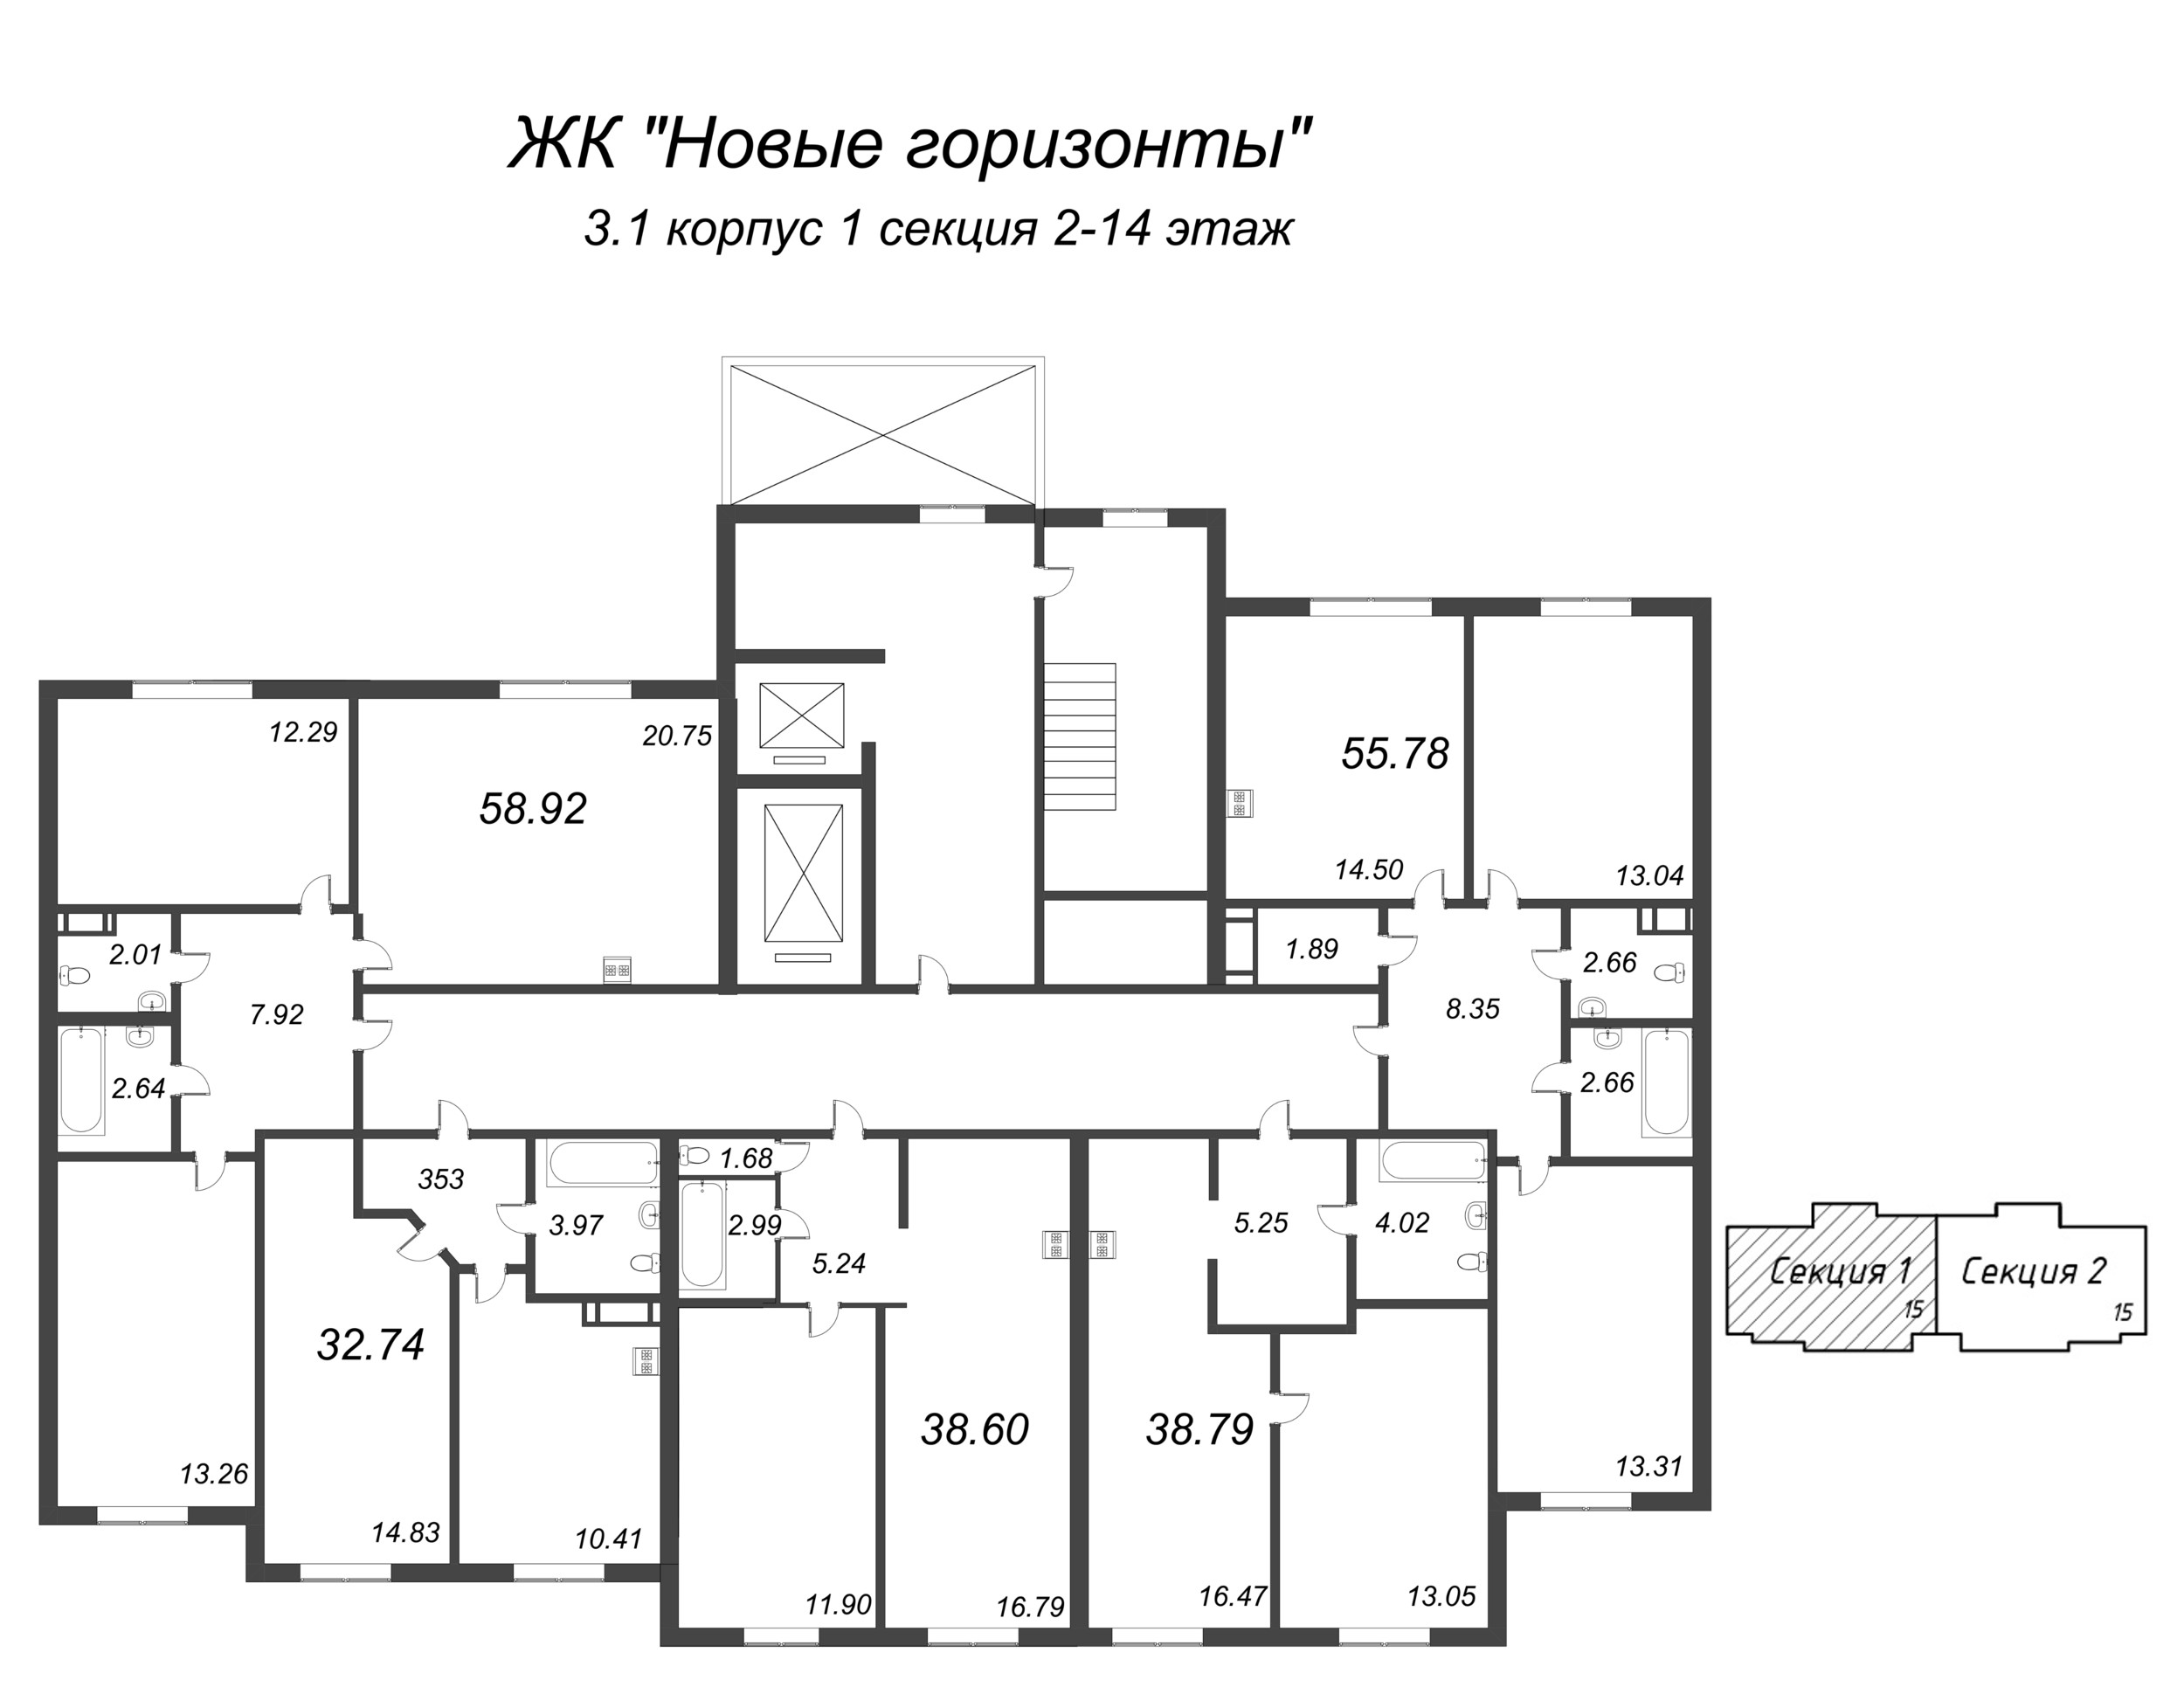 3-комнатная (Евро) квартира, 58.92 м² в ЖК "Новые горизонты" - планировка этажа